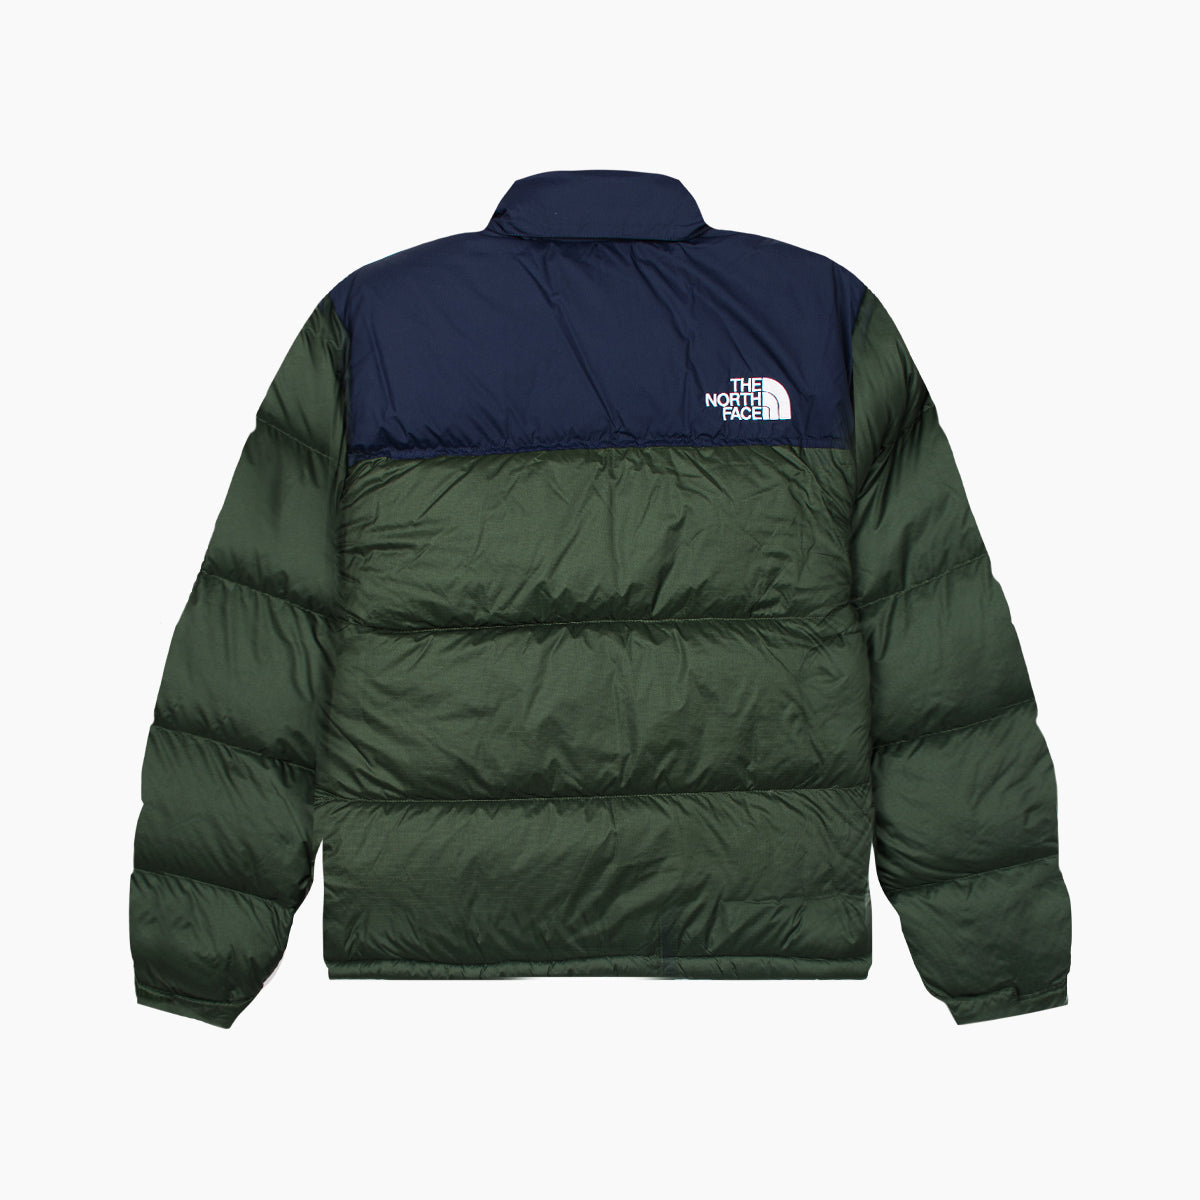 The North Face 1996 Retro Nuptse Jacket-SUEDE Store